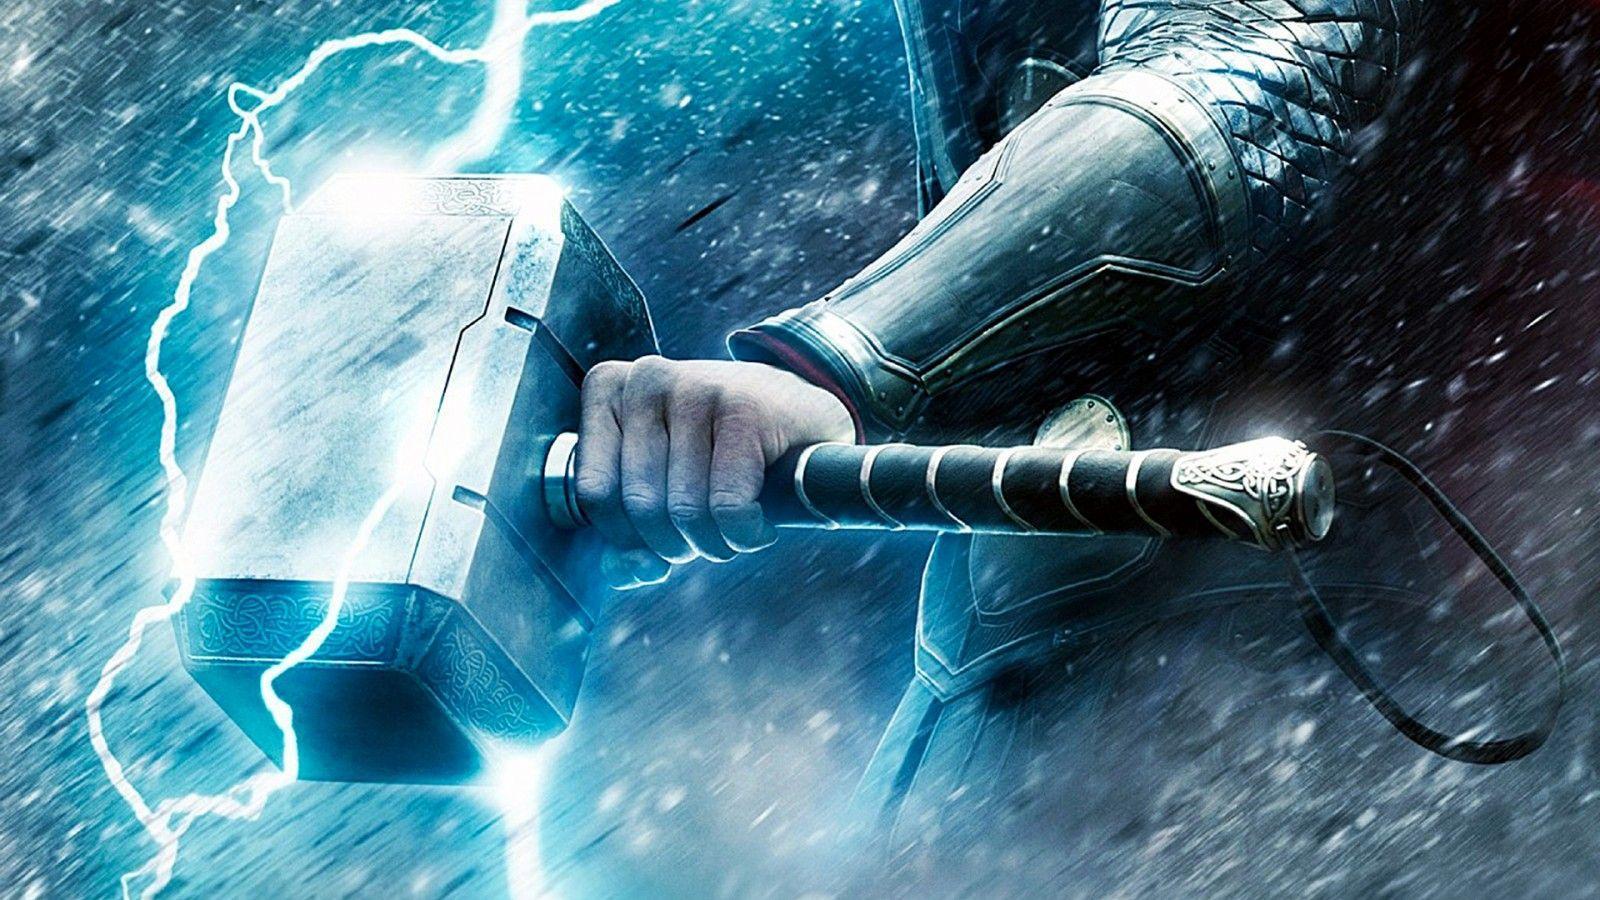 Norse mythology Thor's hammer, Odin's ravens, Vikings